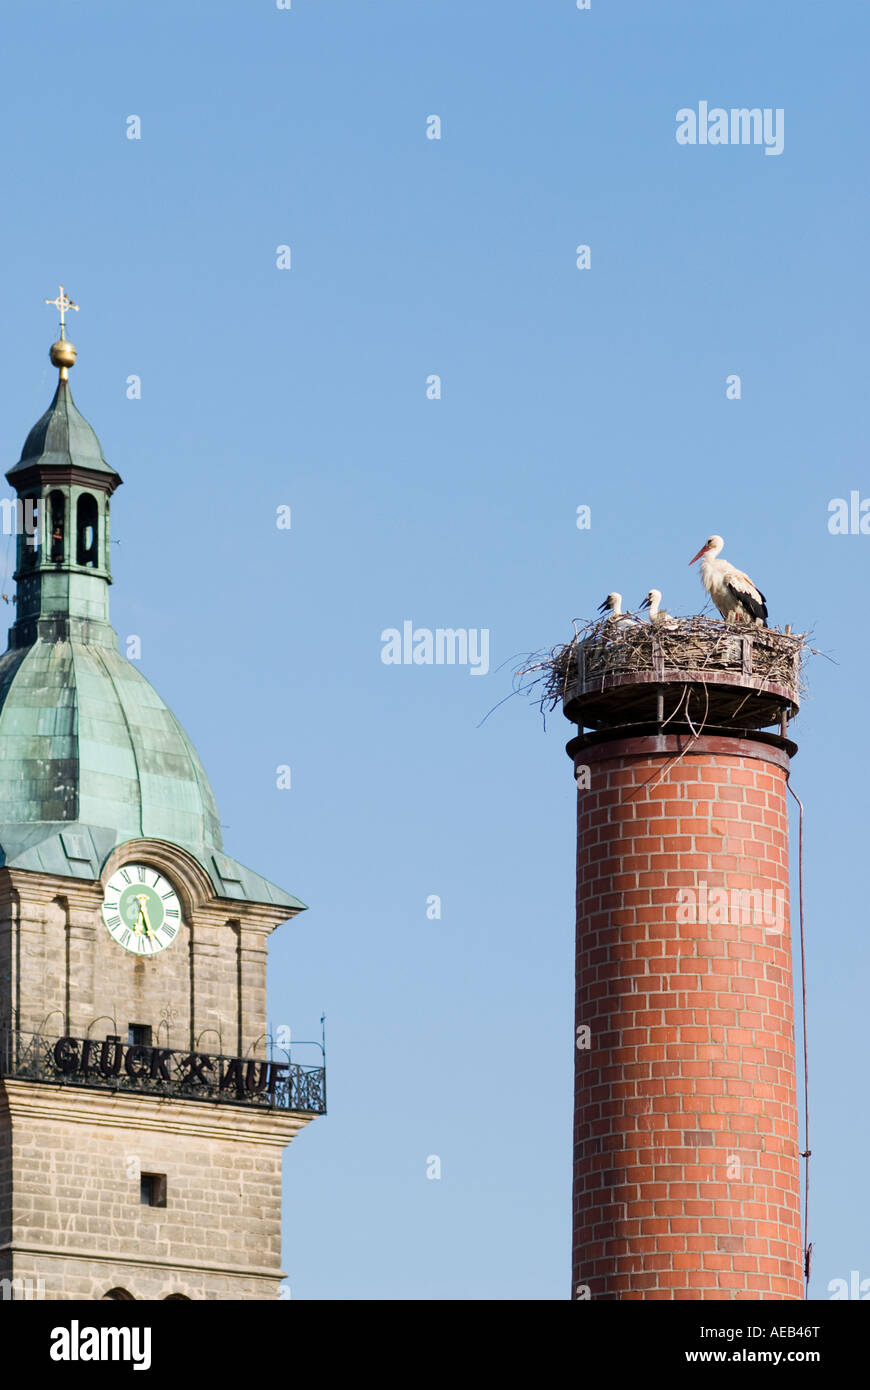 Cicogna bianca (Ciconia ciconia) nido sul camino nella piccola città con il campanile di una chiesa in background. Auerbach, Germania Foto Stock